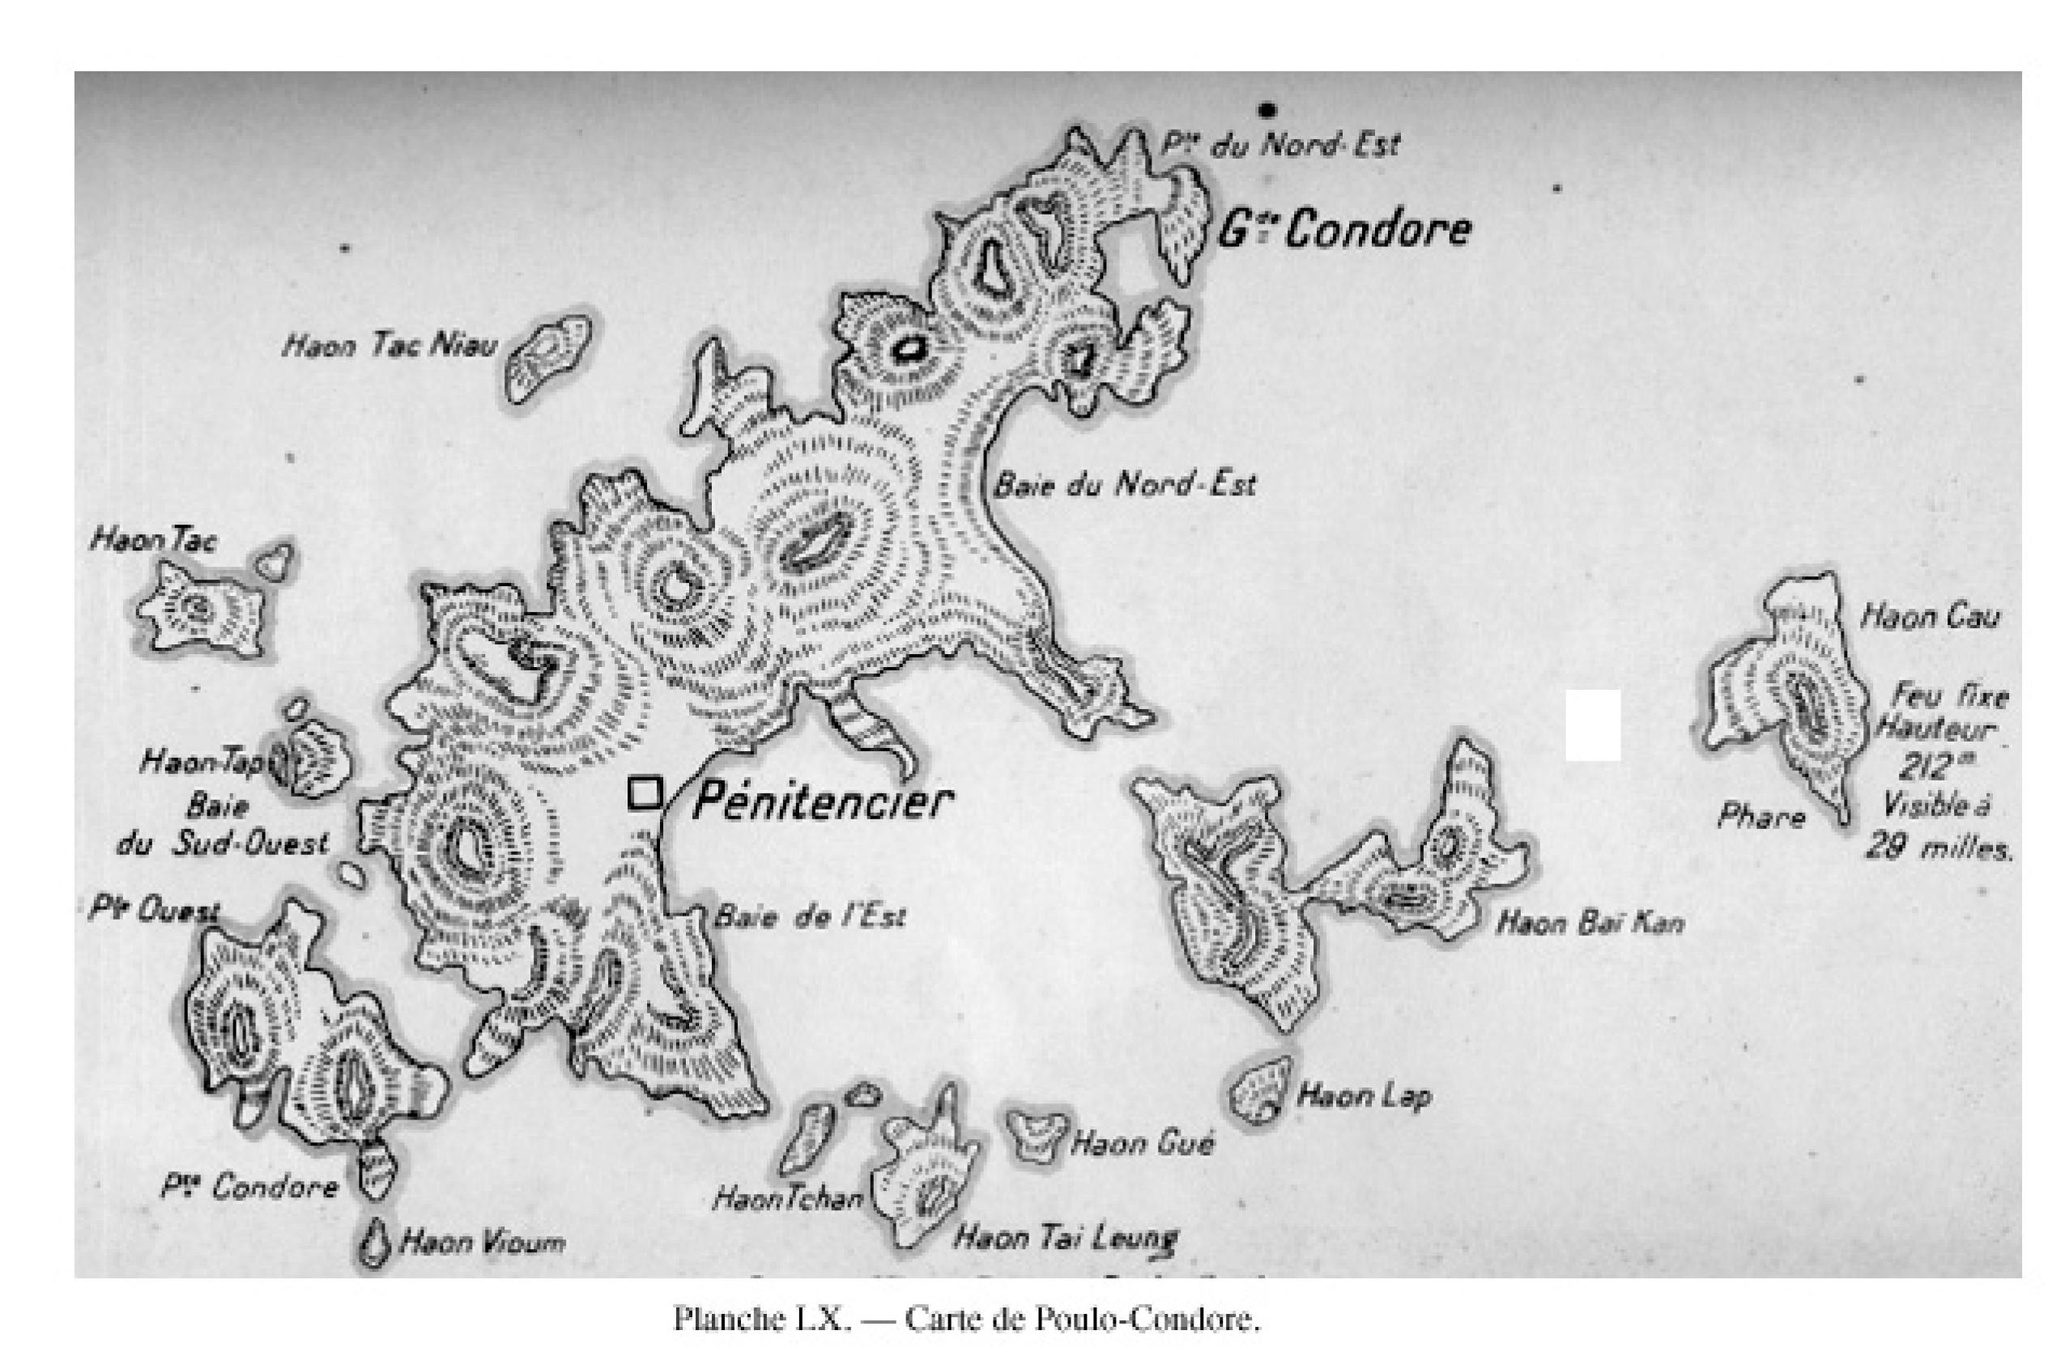 Thằn lằn bay và những tiết lộ 'không thể ngờ' về Côn Đảo cách nay 300 năm - ảnh 1